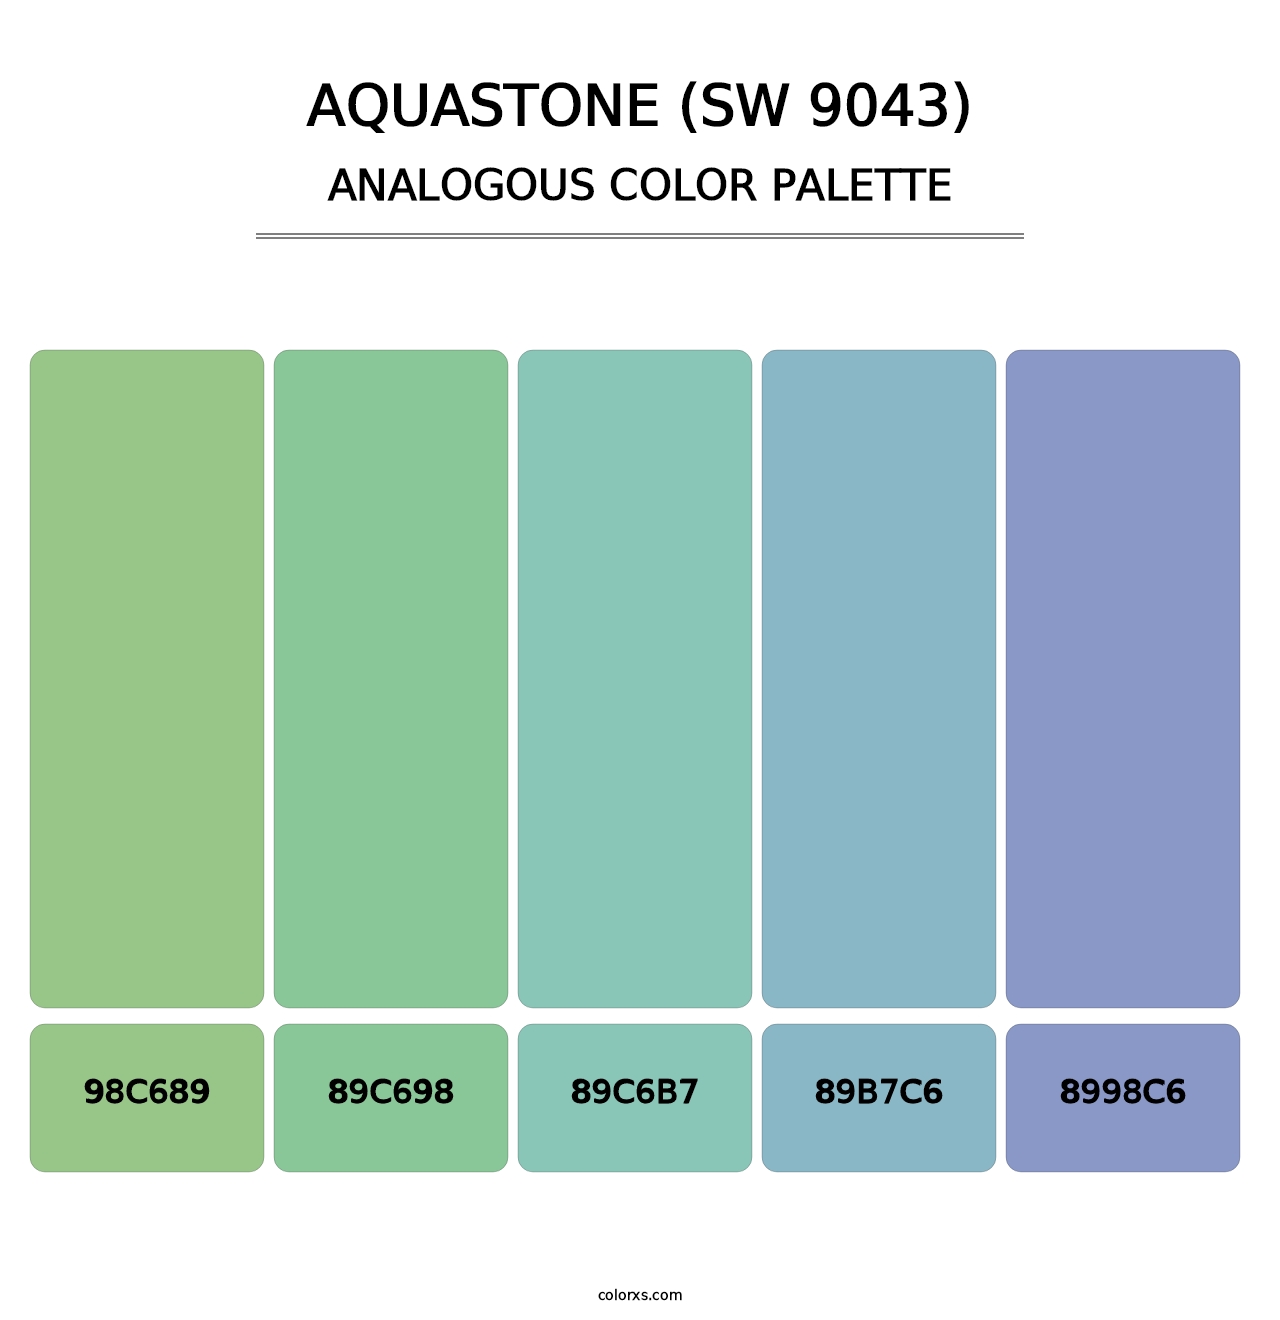 Aquastone (SW 9043) - Analogous Color Palette